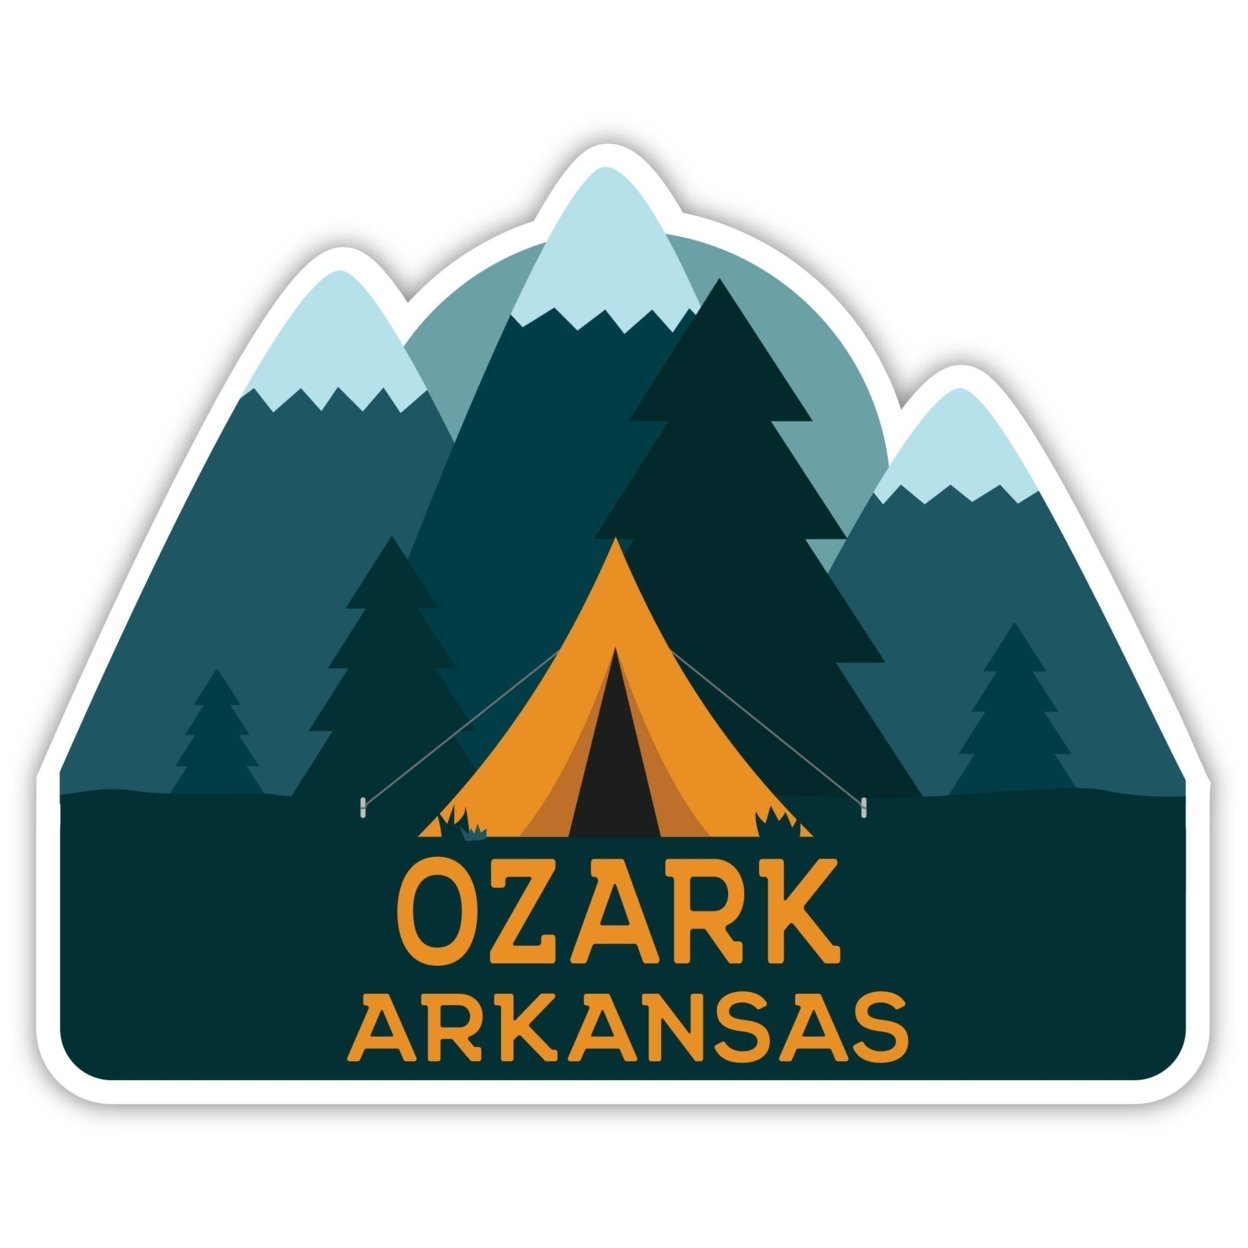 Ozark Arkansas Souvenir Decorative Stickers (Choose Theme And Size) - Single Unit, 2-Inch, Tent